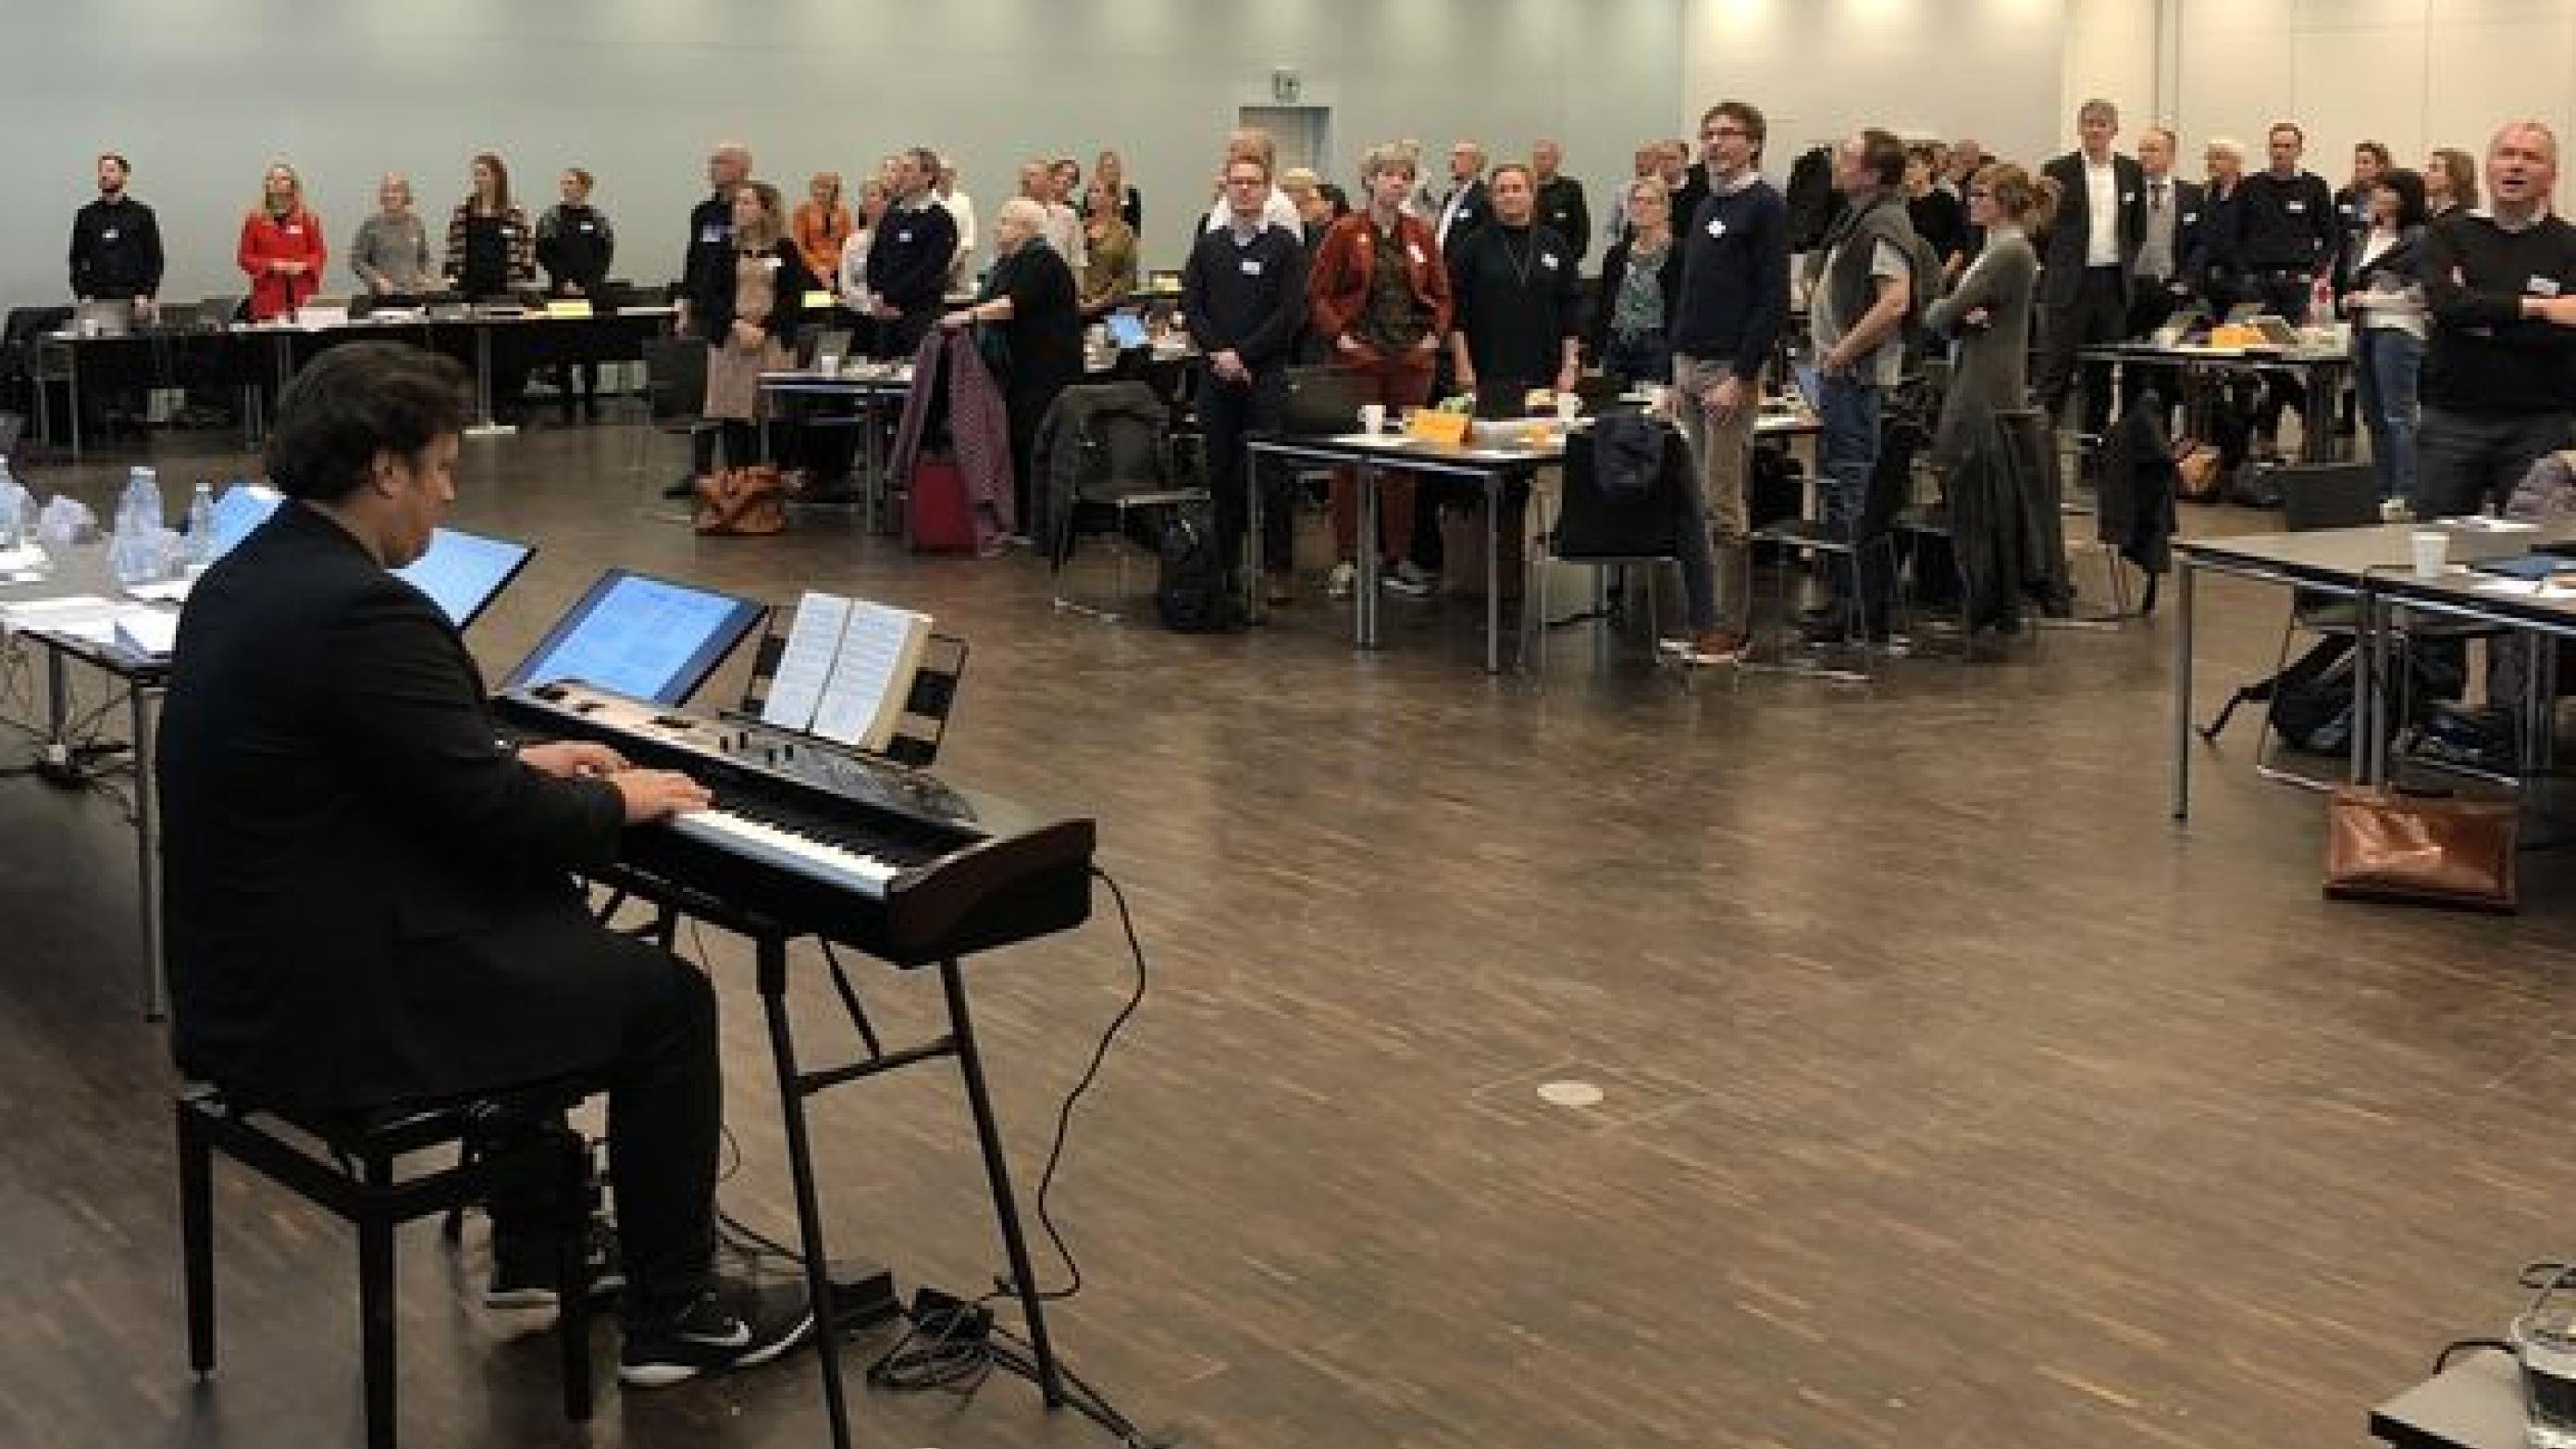 Repræsentantskabet åbner altid sine møder med en sang. Denne gang blev det Kim Larsens "Papirklip". På keyboard læge Henrik Nyholm, Midtjylland. Foto: Ugeskrift for Læger.